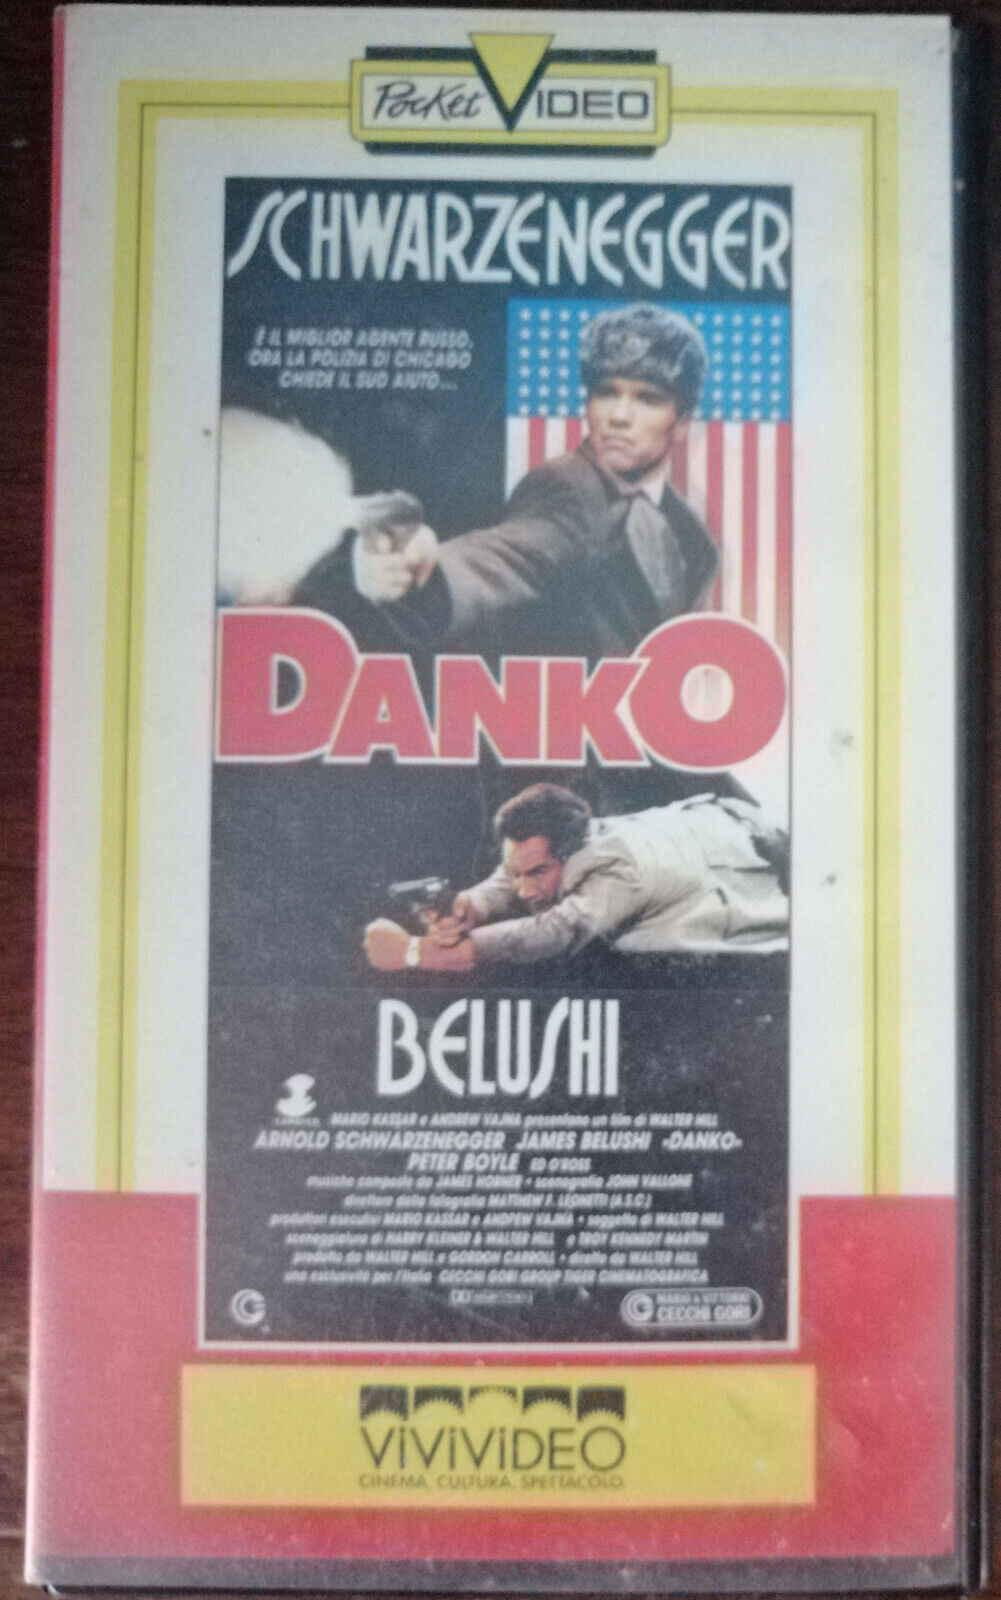 Danko - Schwarzenegger - Vivivideo, 1987 - VHS - A vhs usato